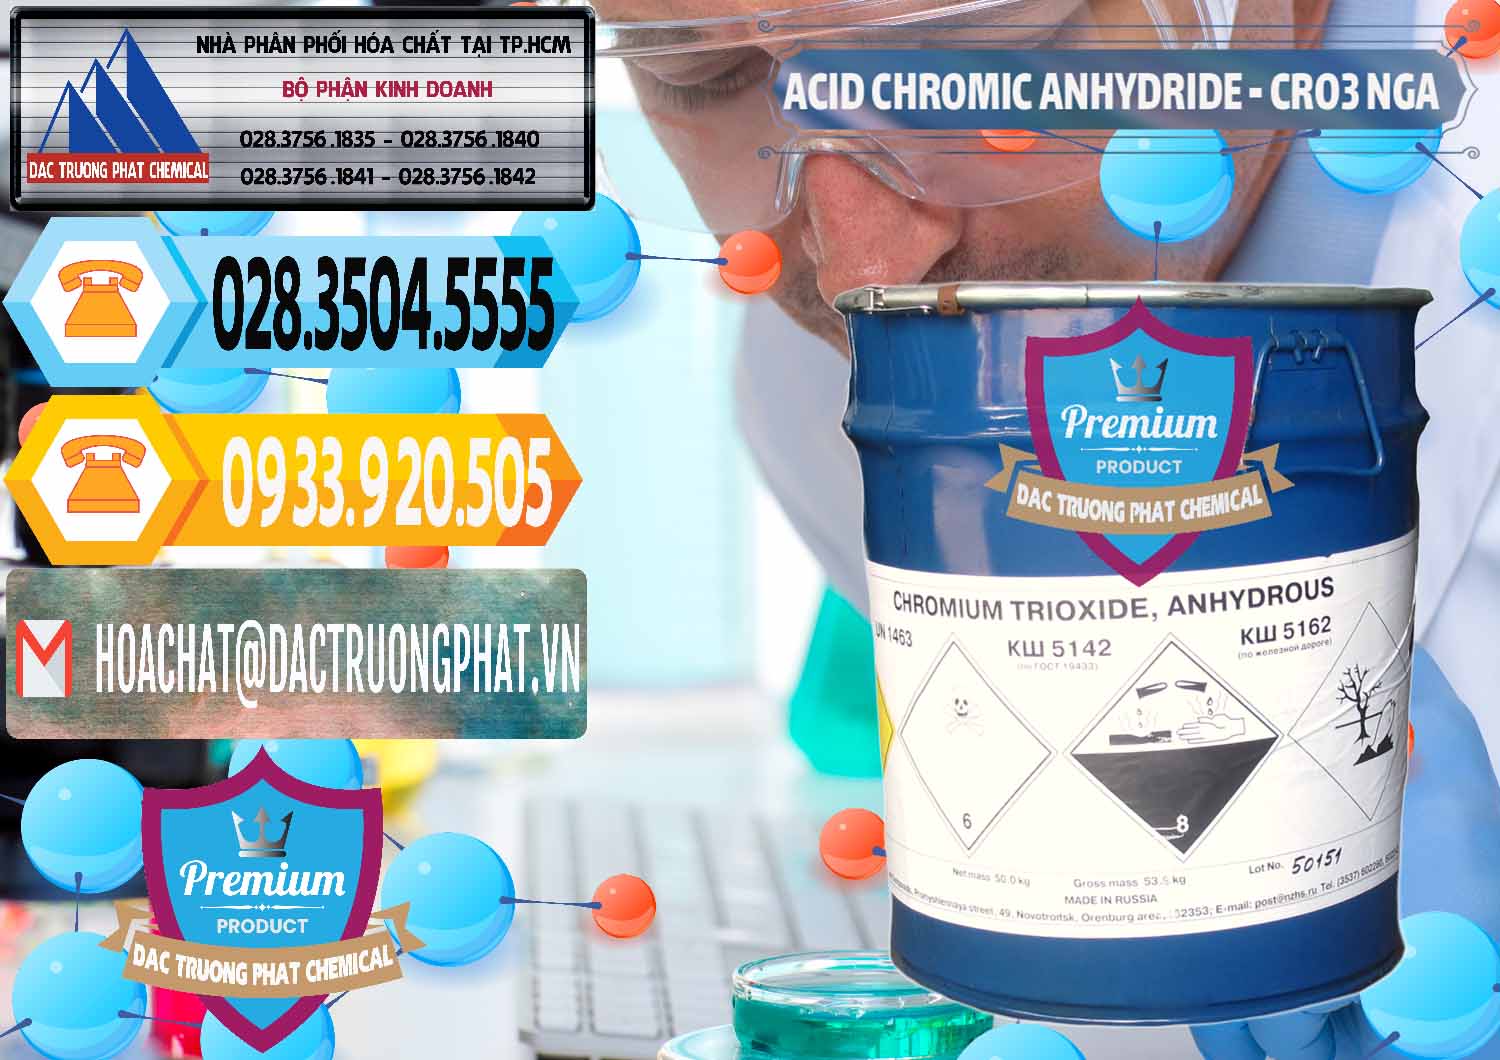 Cty chuyên cung cấp - bán Acid Chromic Anhydride - Cromic CRO3 Nga Russia - 0006 - Công ty cung cấp ( phân phối ) hóa chất tại TP.HCM - hoachattayrua.net